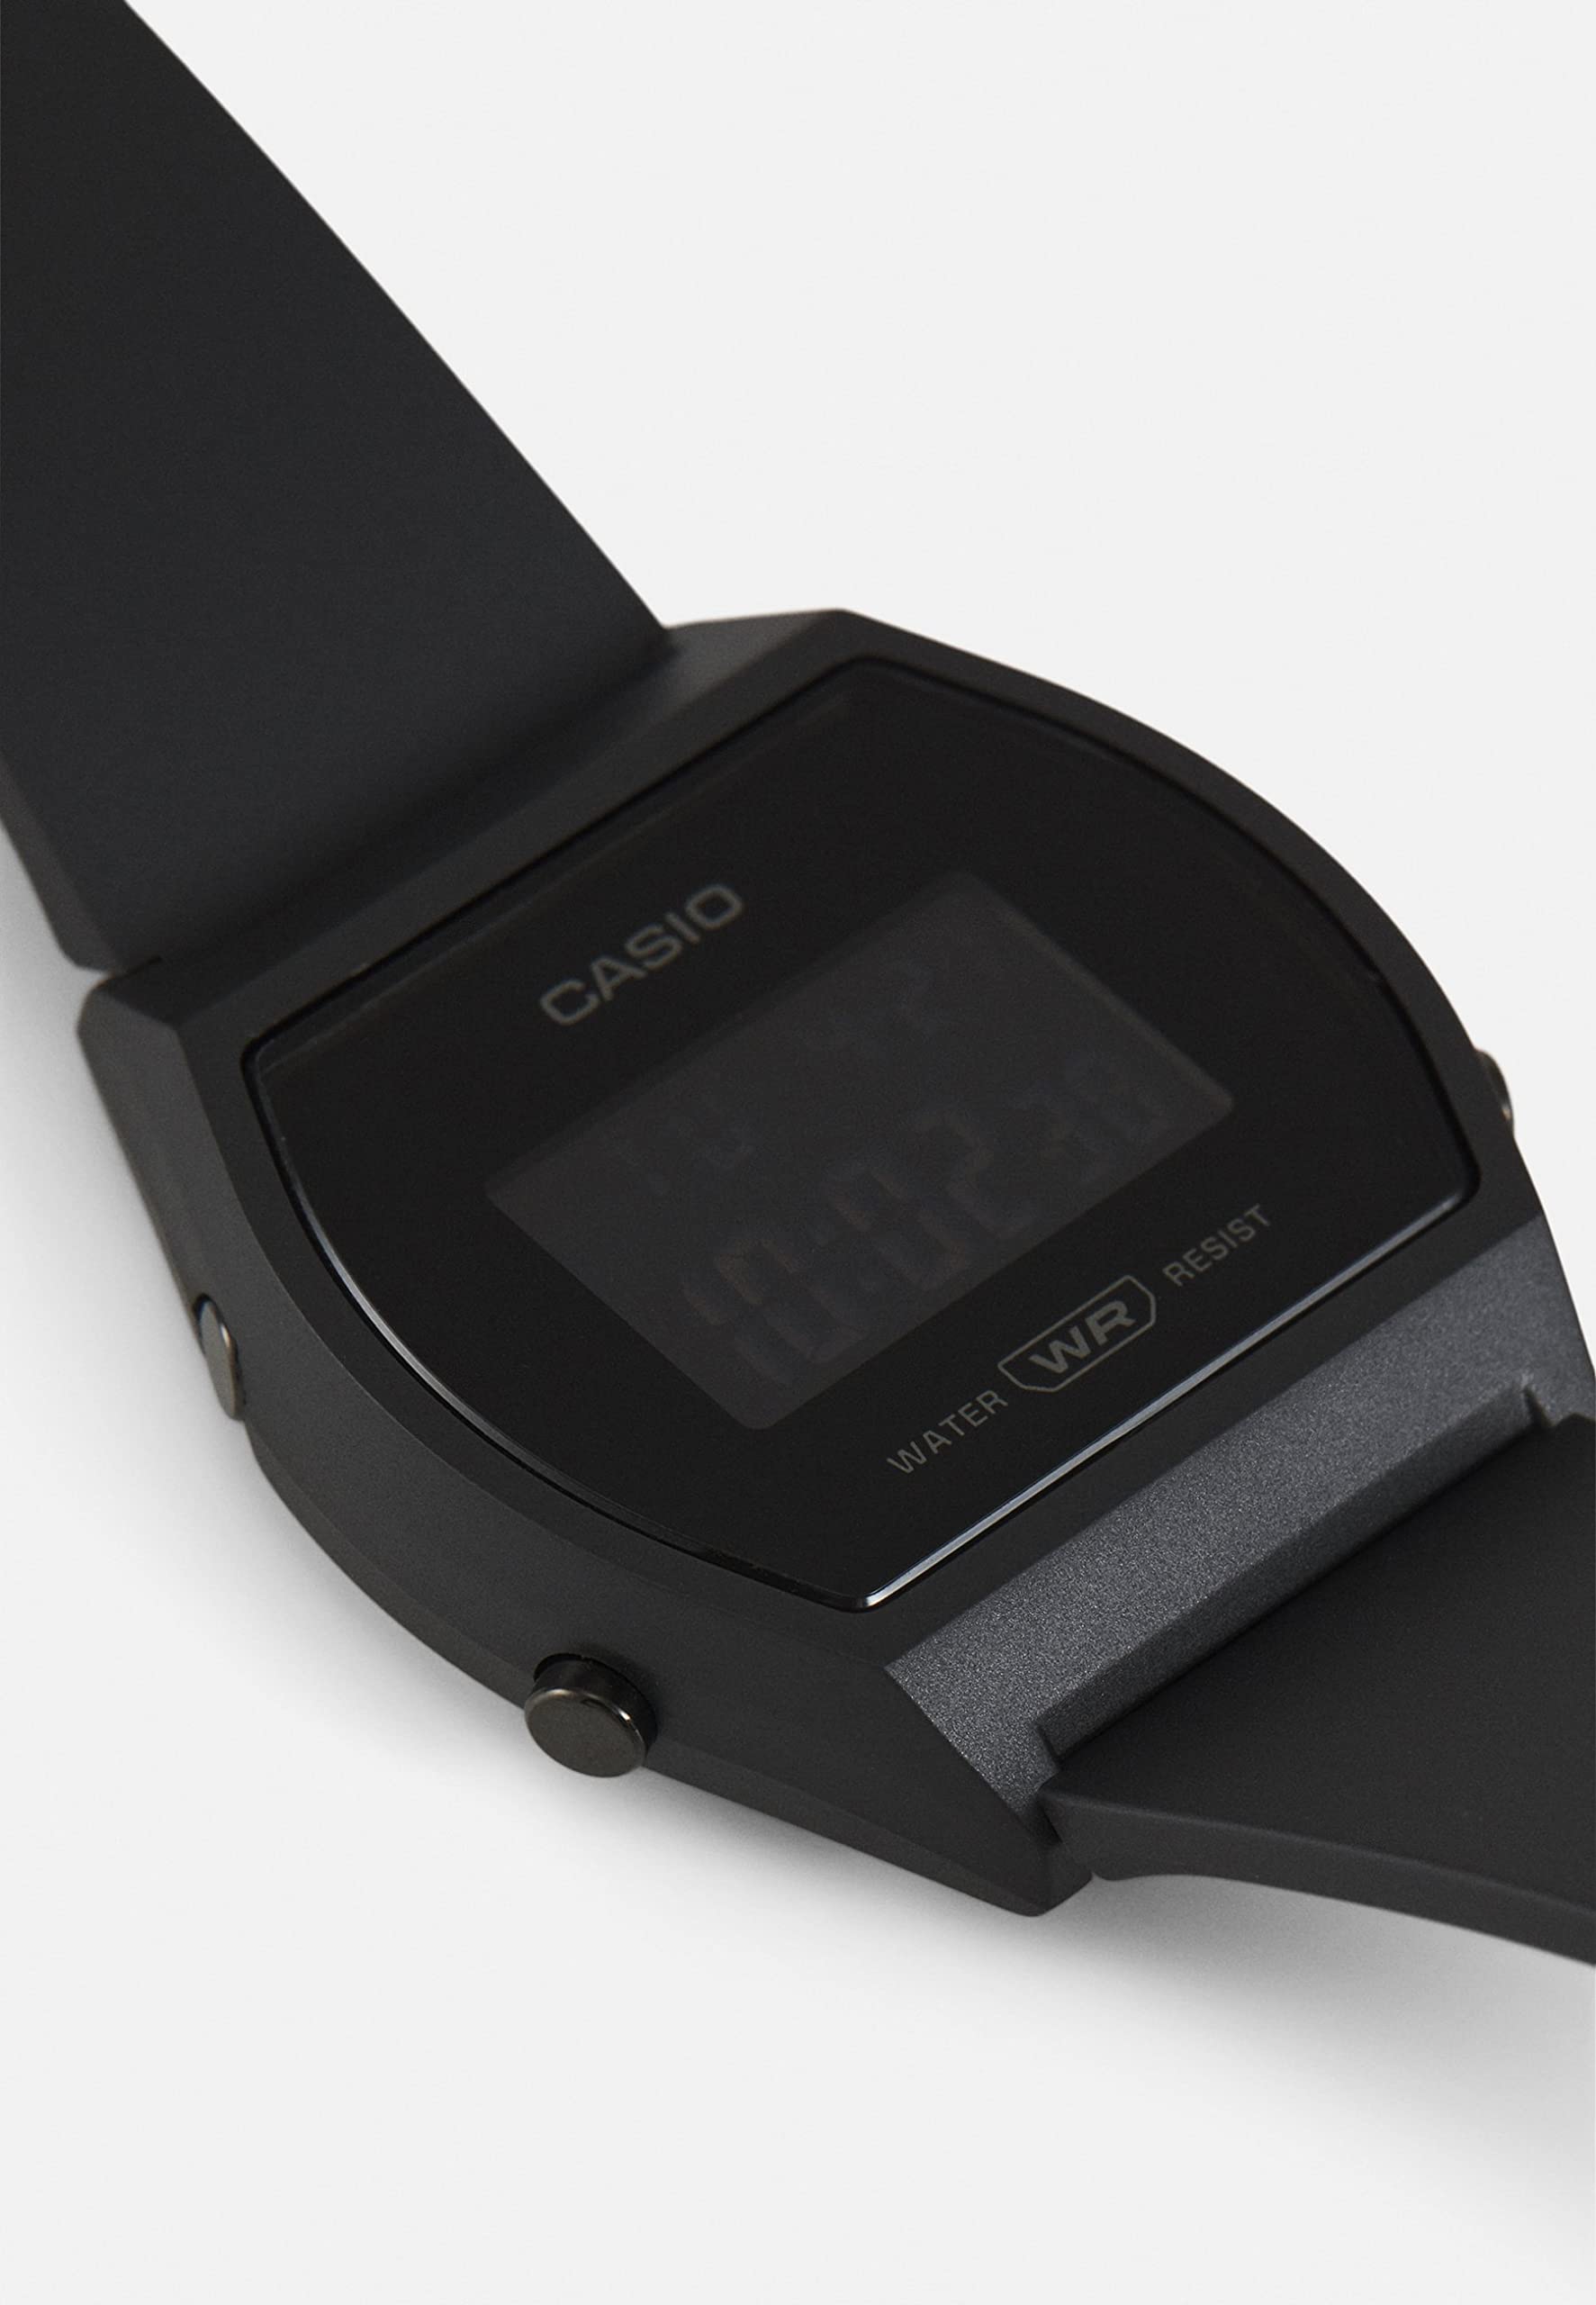 Casio Watch LW-204-1BEF